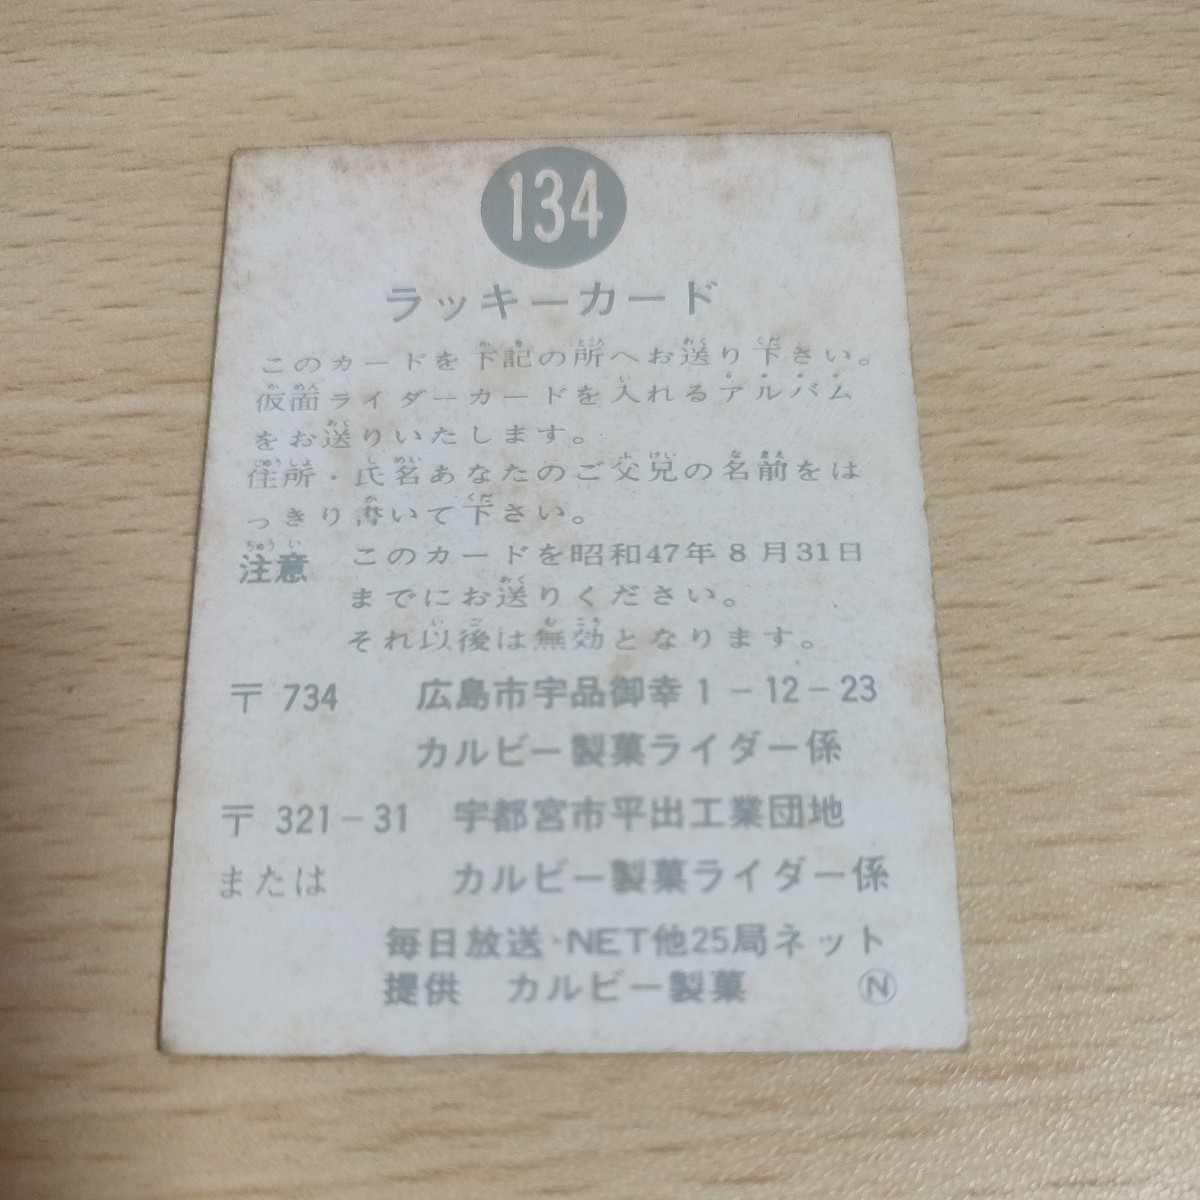 aca2 仮面ライダー 旧カルビー 134 ラッキーカード N 8月31日